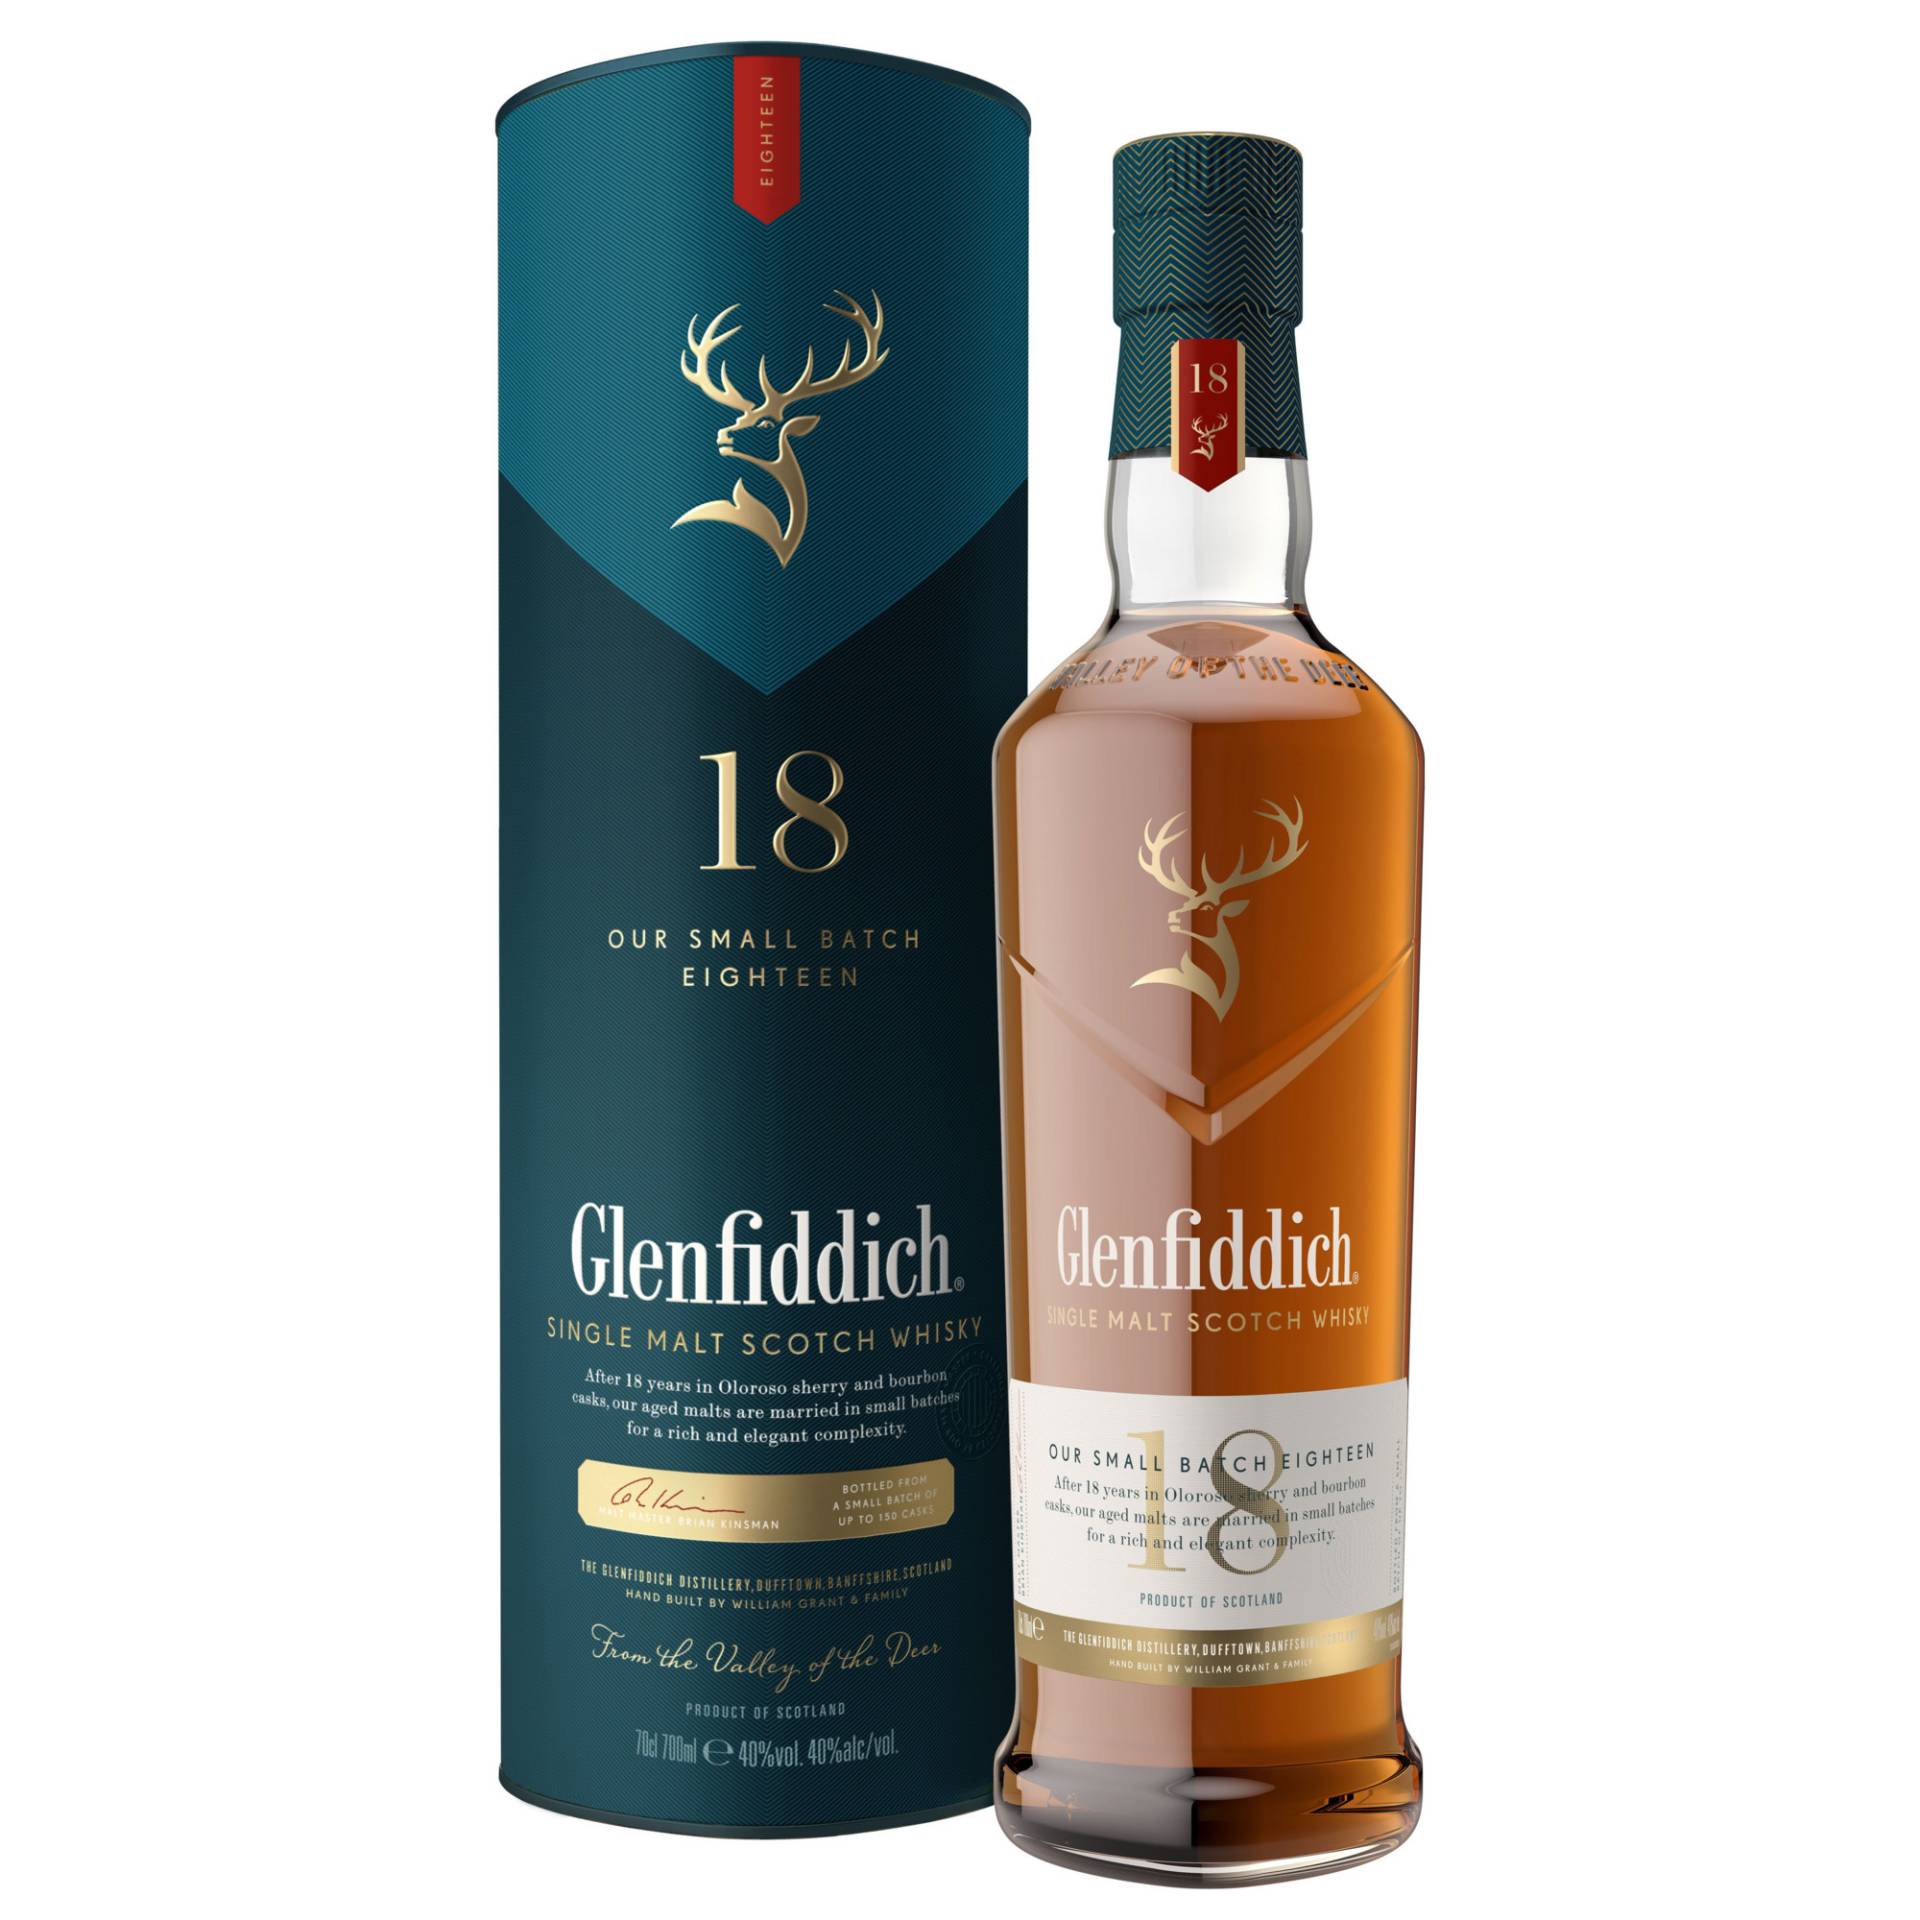 Glenfiddich 18 Single Malt Whisky, Whisky, 0,7L, 40% Vol., Schottland, Spirituosen von William Grant & Sons Global Brands Ltd., Tullamore, Ireland